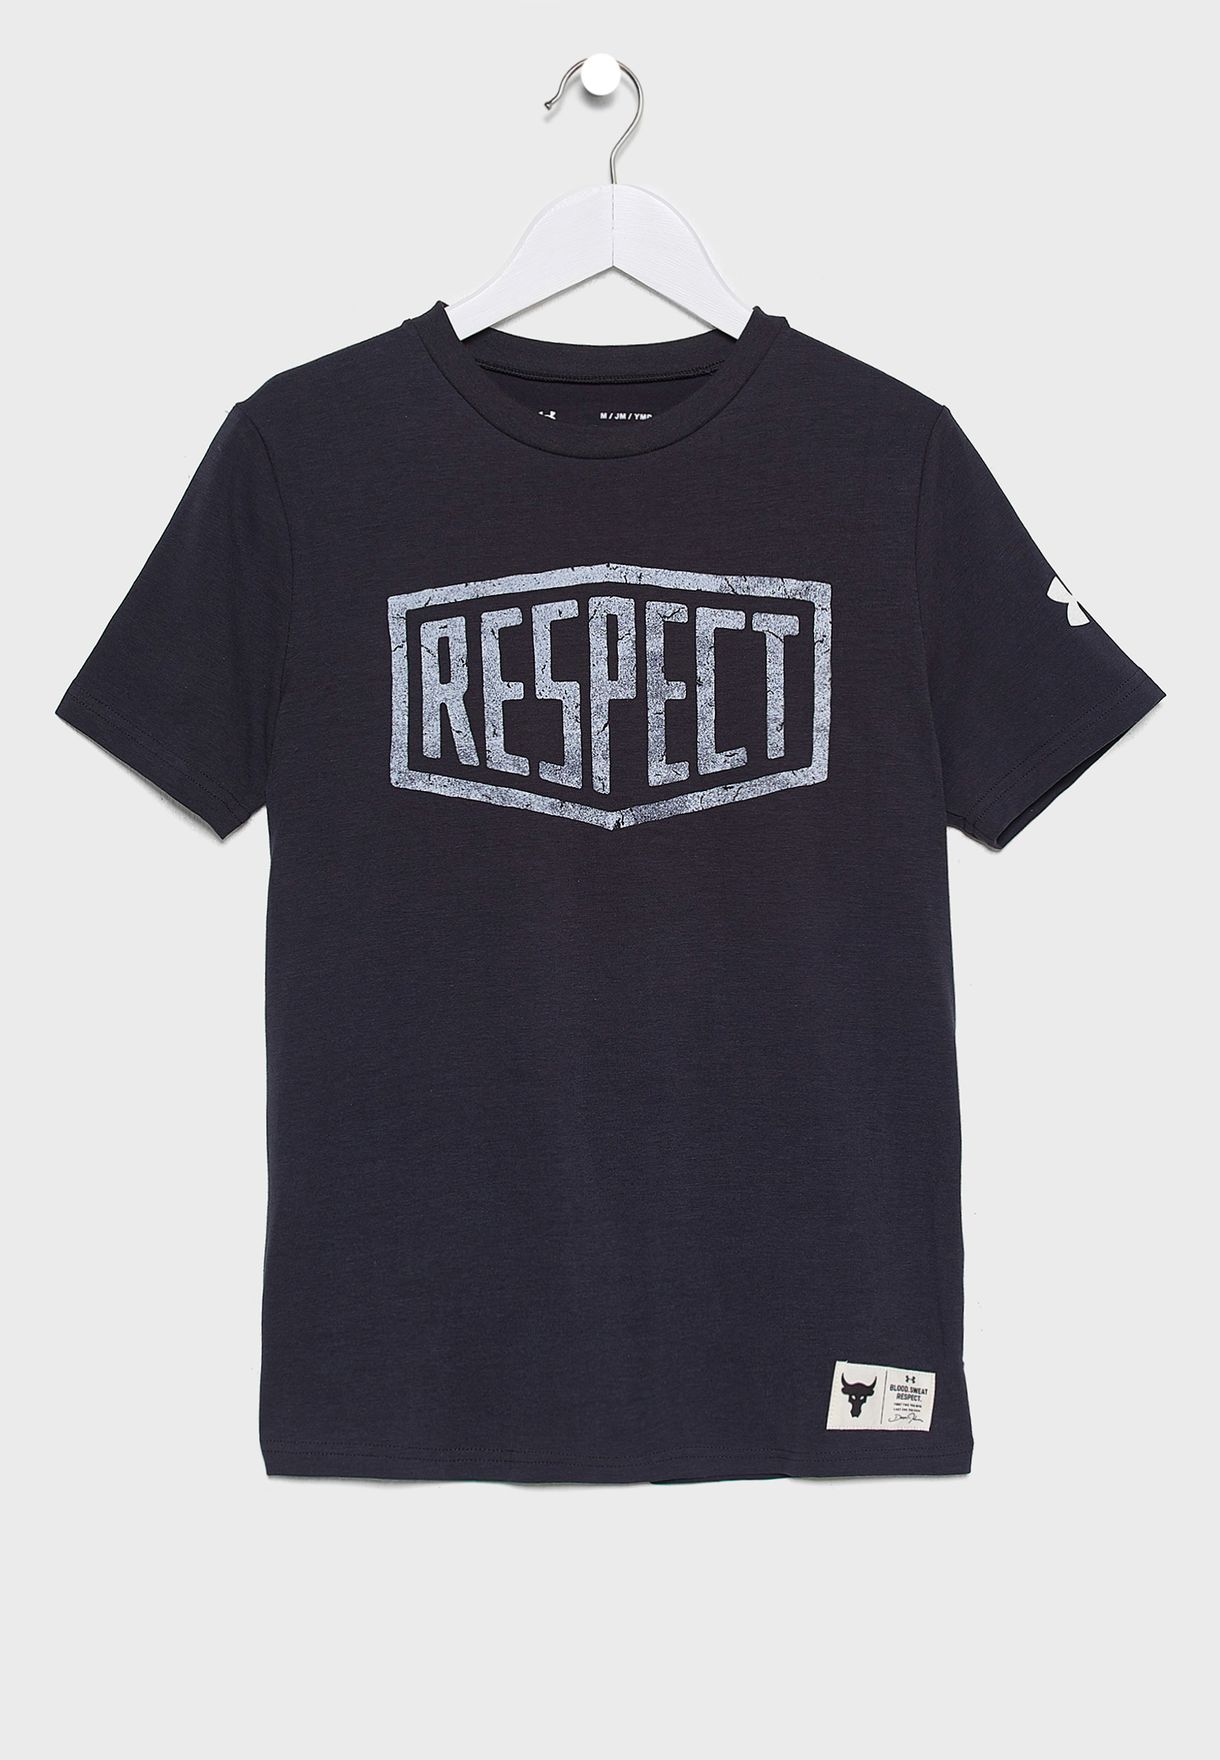 the rock respect shirt